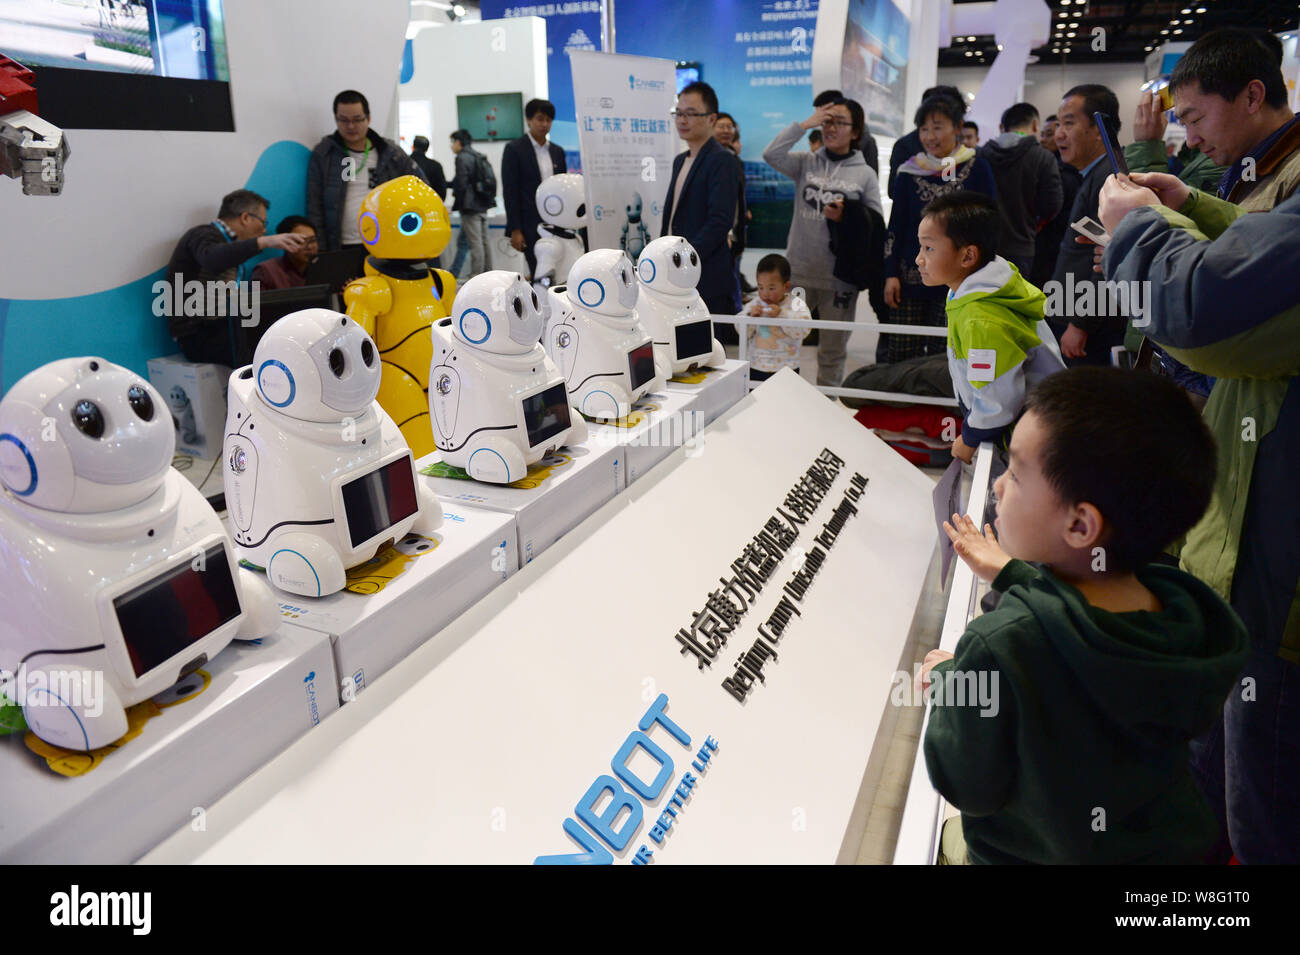 Besucher Blick auf Roboter auf dem Display am Stand von Peking Canny Unisrobo Technology Co., Ltd., der während der Welt Roboter Conference 2015 (WRC 2015). Stockfoto